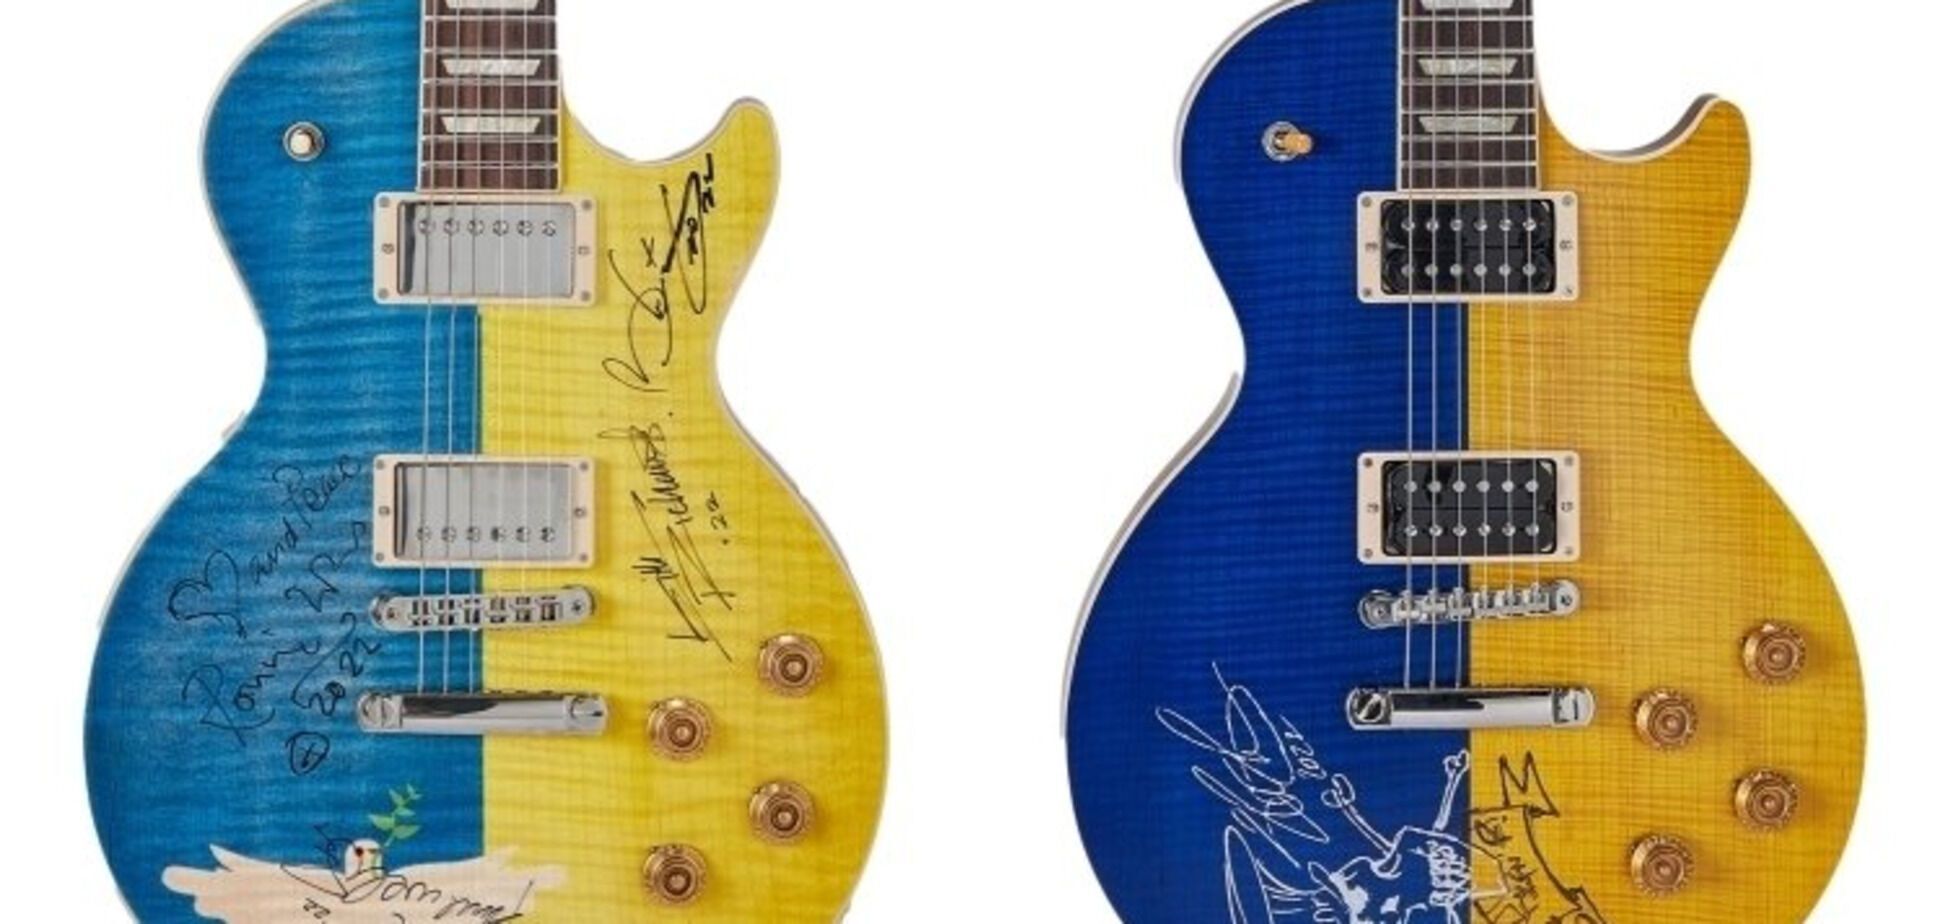 Сине-желтую гитару Пола Маккартни продали на аукционе за рекордную сумму: деньги пойдут на помощь Украине